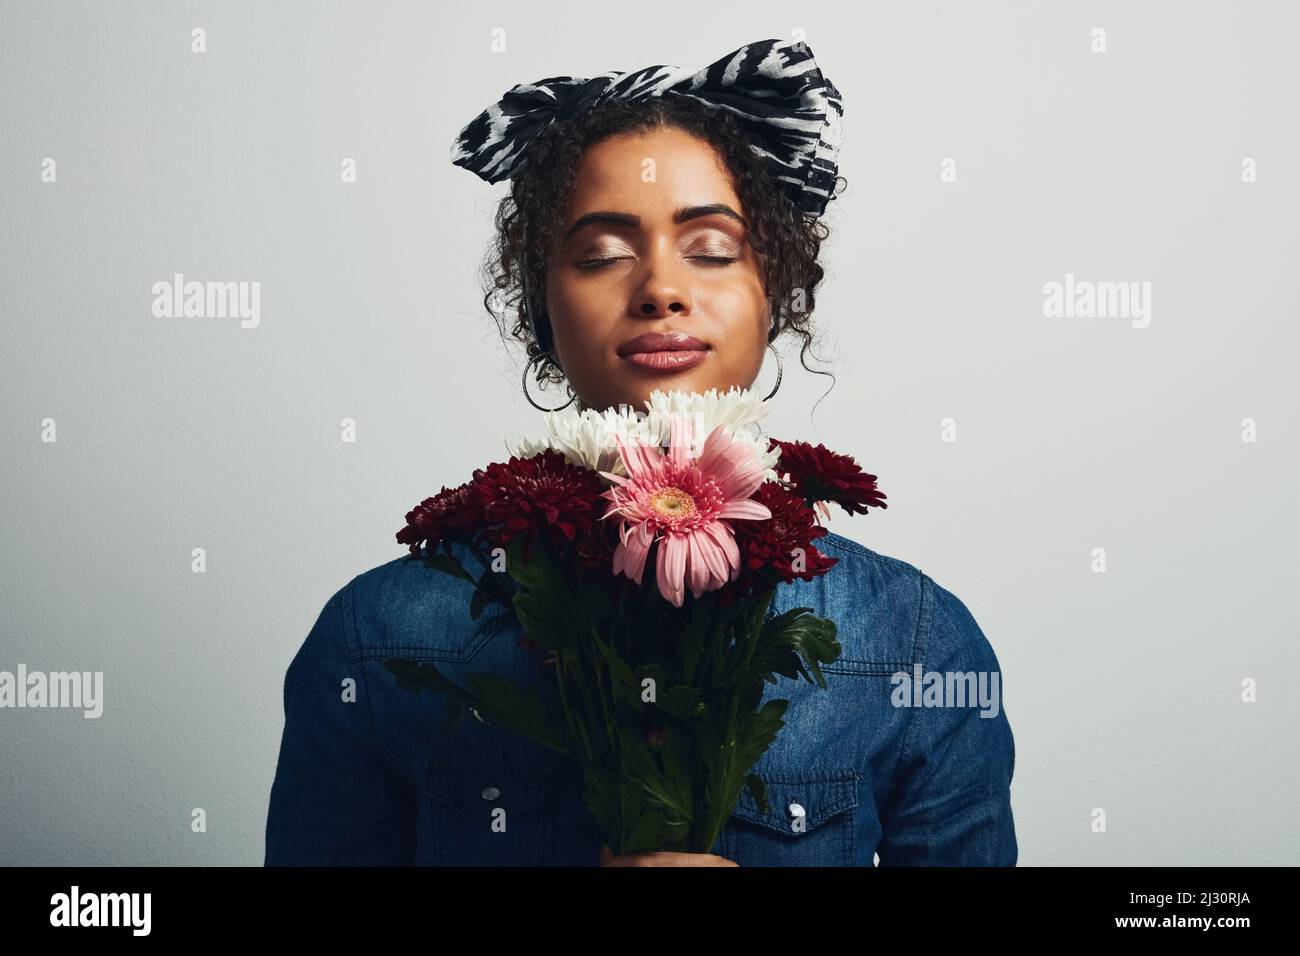 Il dolce odore di fiori mi calma. Studio girato di una giovane donna attraente che tiene un mazzo di fiori su uno sfondo grigio. Foto Stock